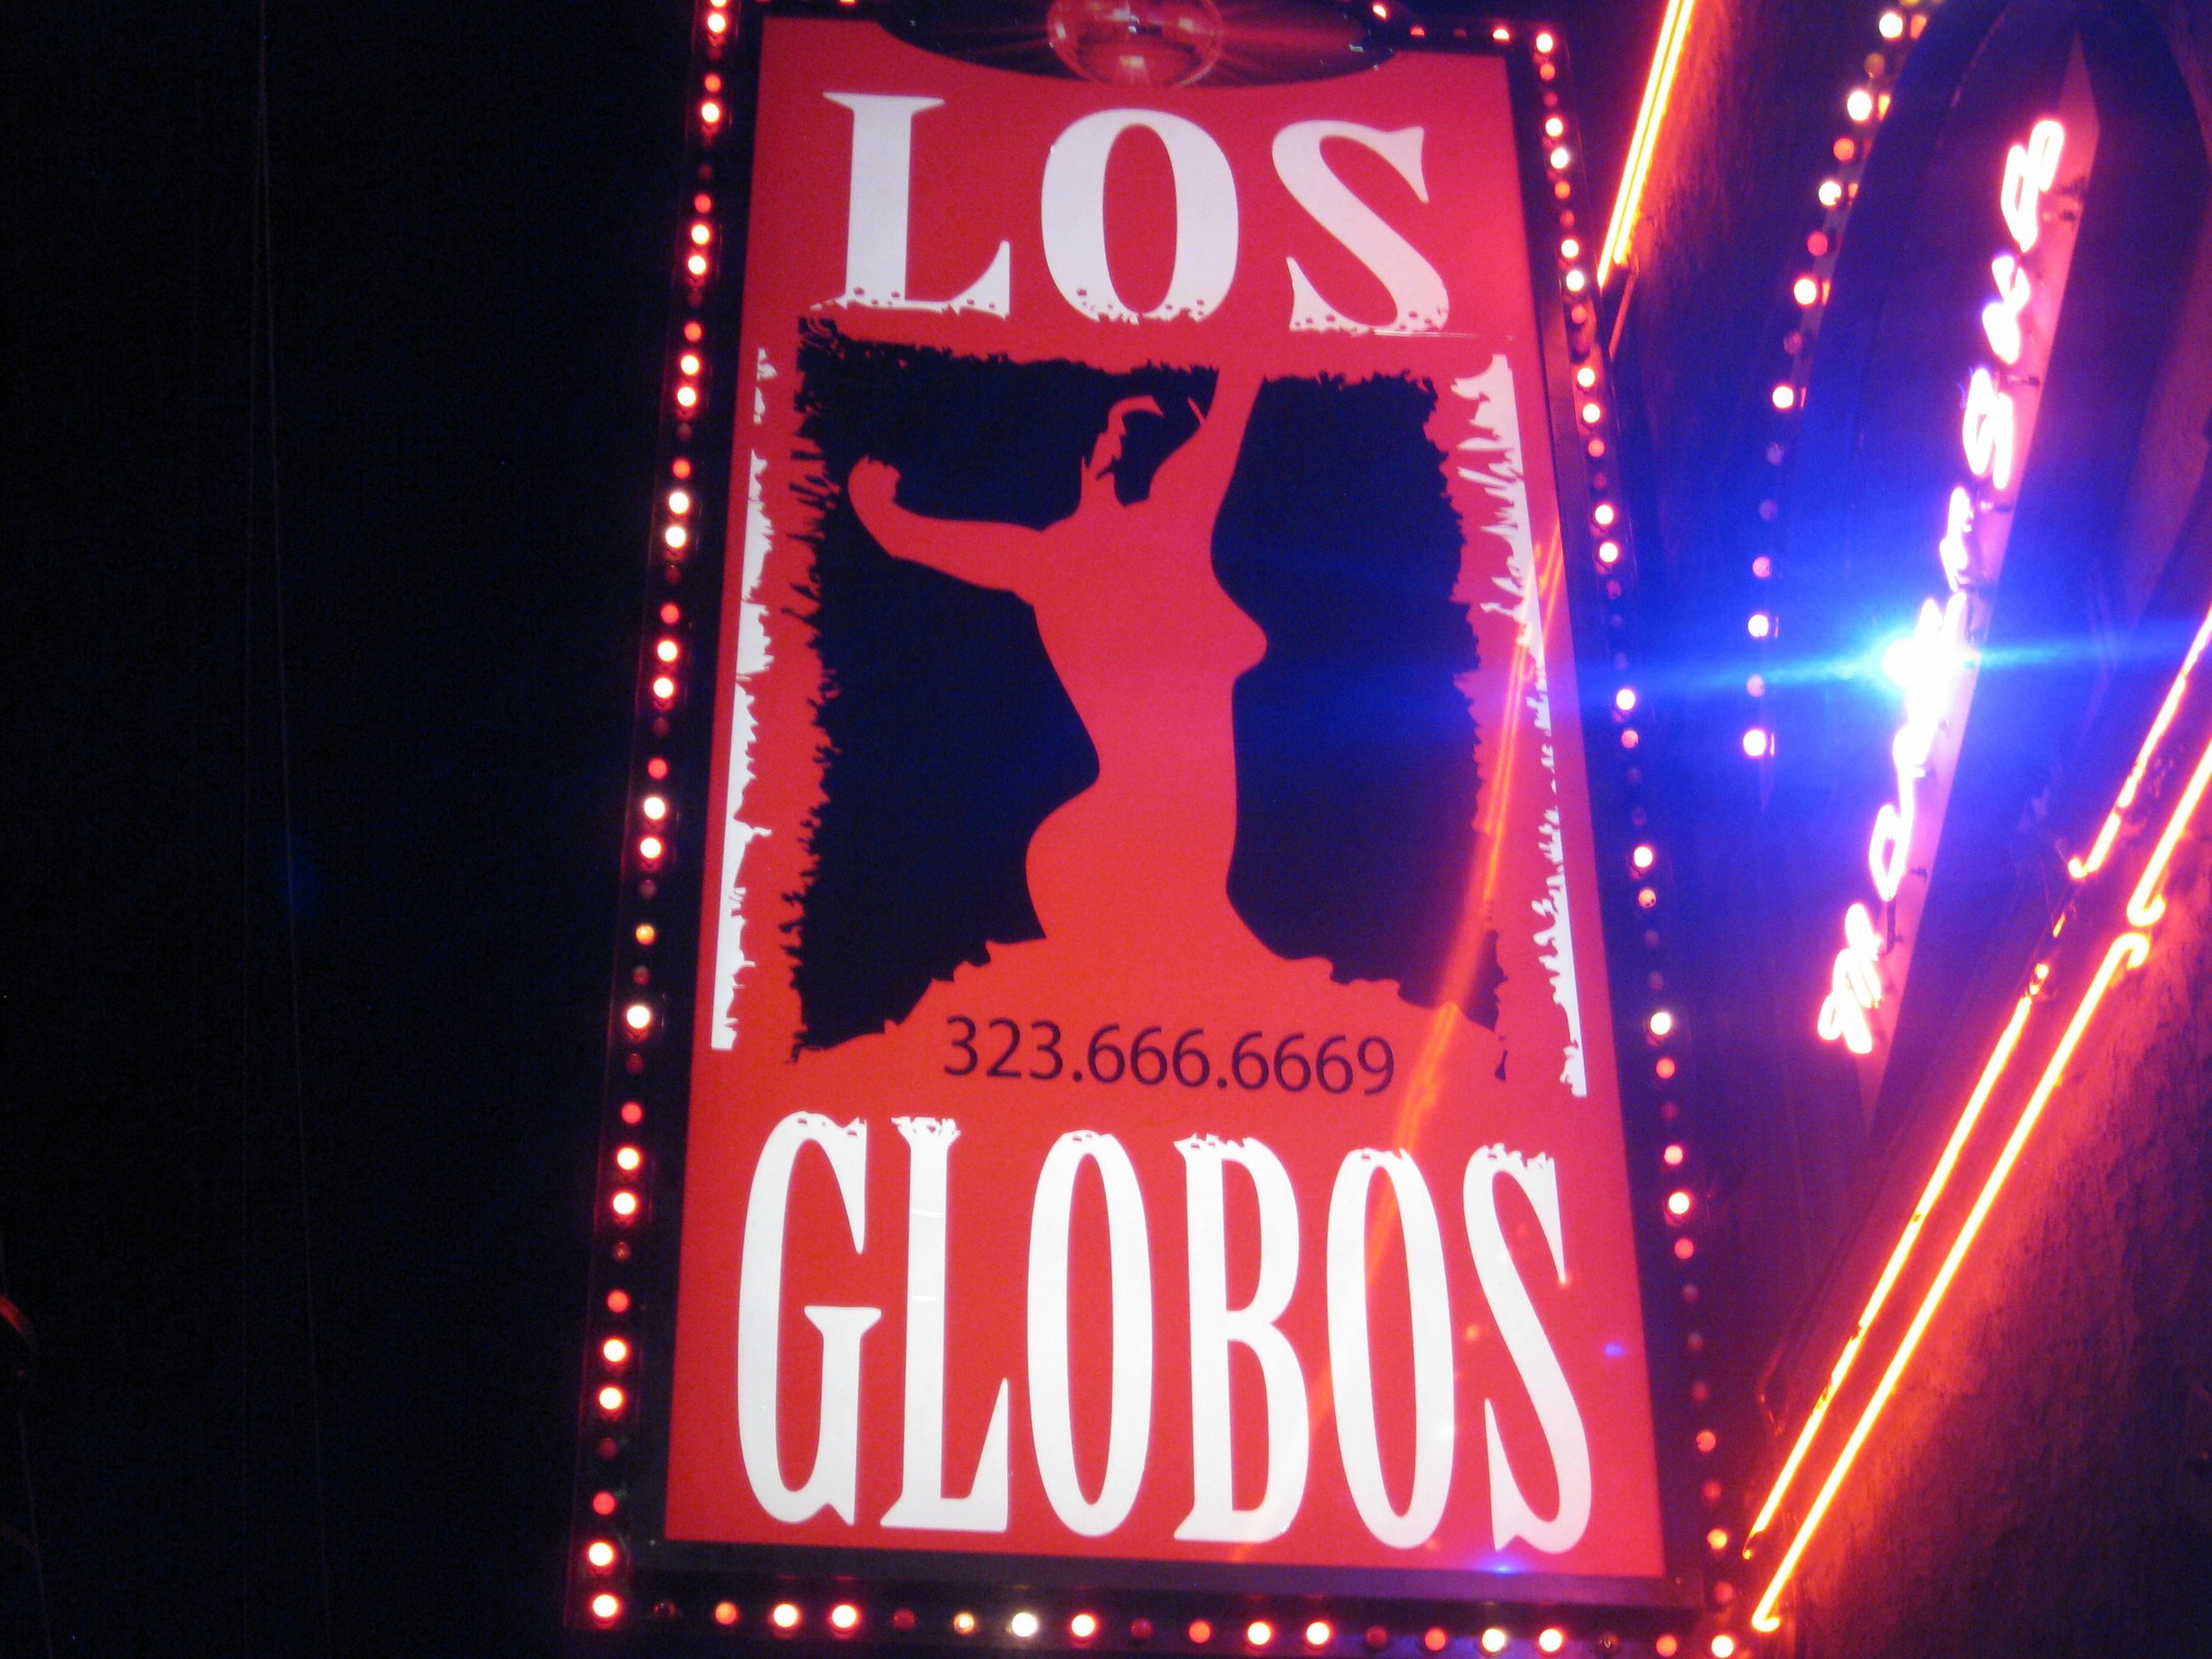 Los Globos.jpg